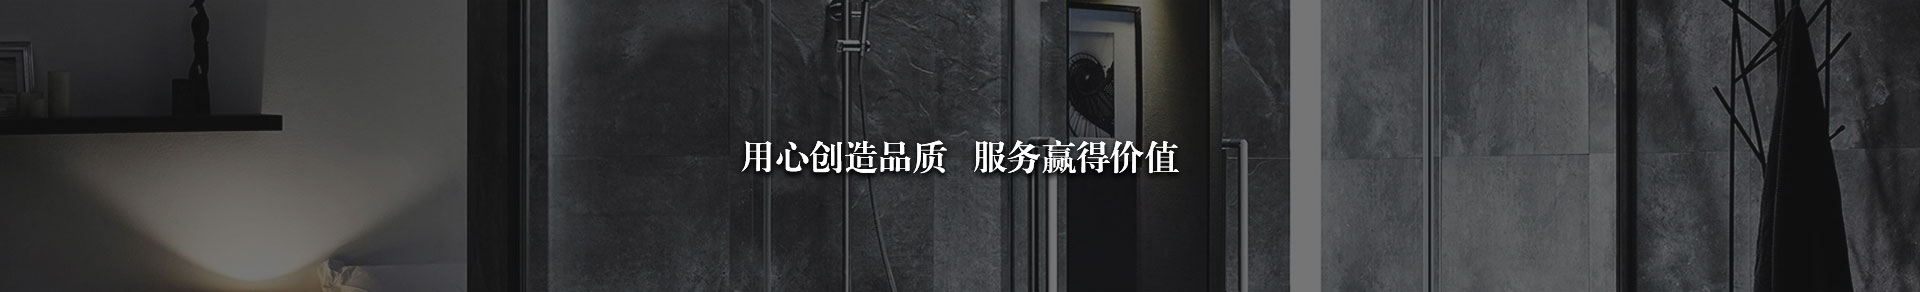 杭州瑞菱自动化设备有限公司